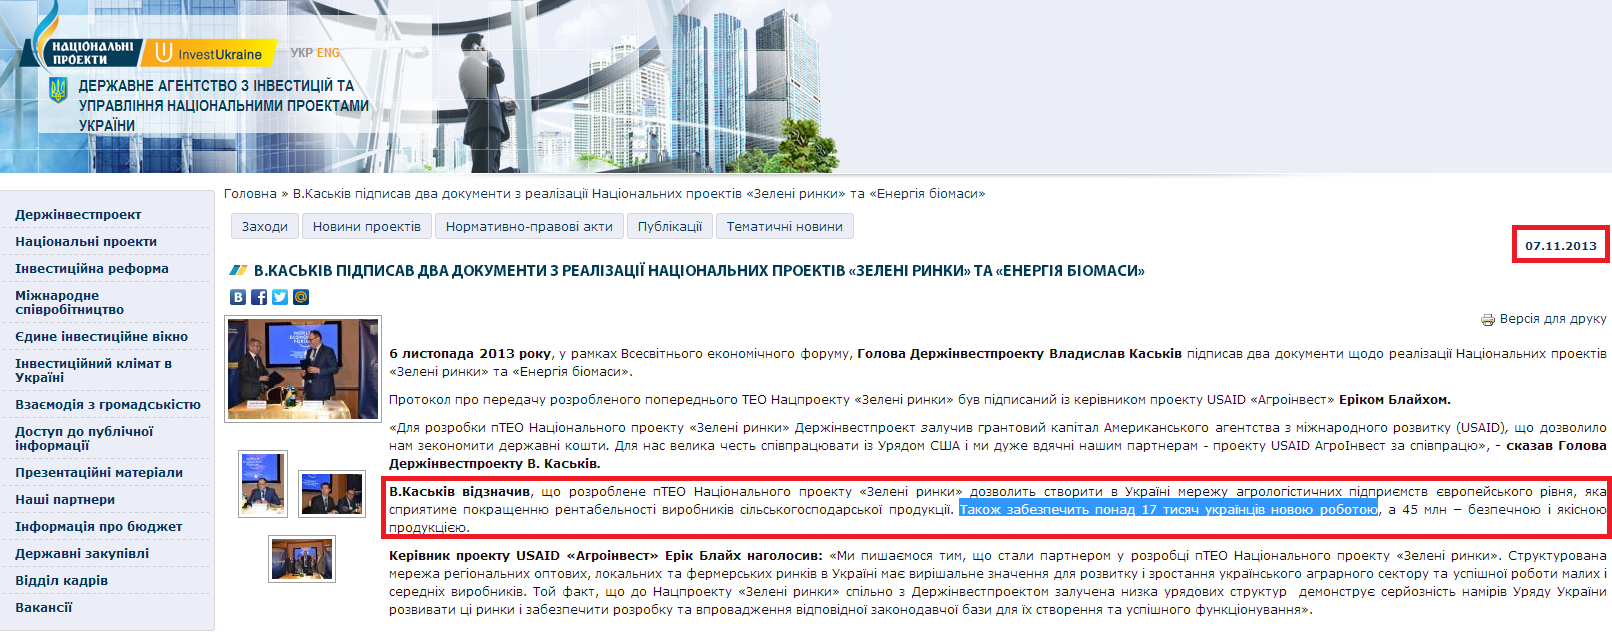 http://www.ukrproject.gov.ua/news/vkaskiv-pidpisav-dva-dokumenti-z-realizatsii-natsionalnikh-proektiv-zeleni-rinki-ta-energiya-bi